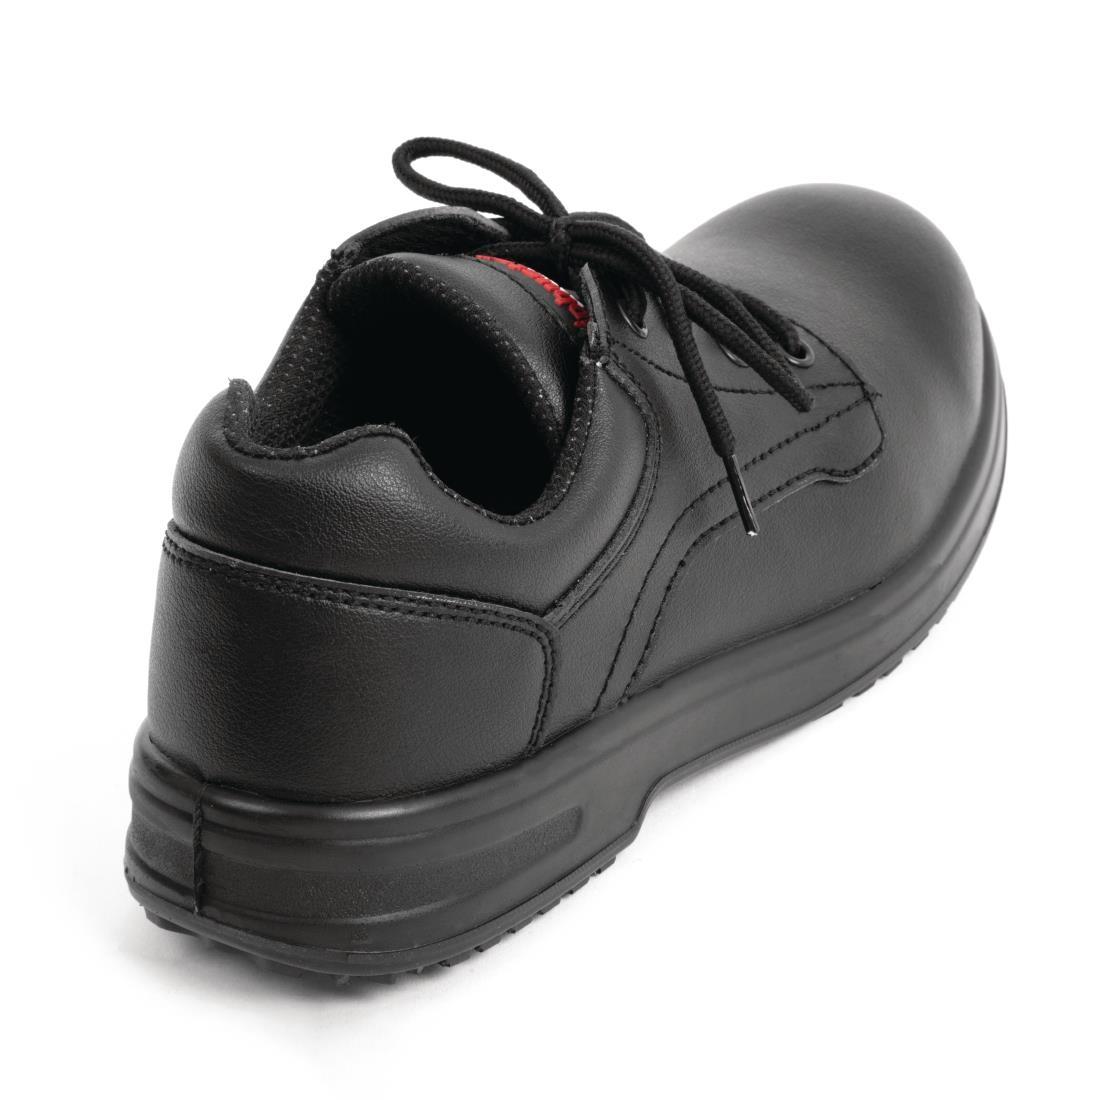 Slipbuster Basic Toe Cap Safety Shoes Black 36 - BB497-36  - 3